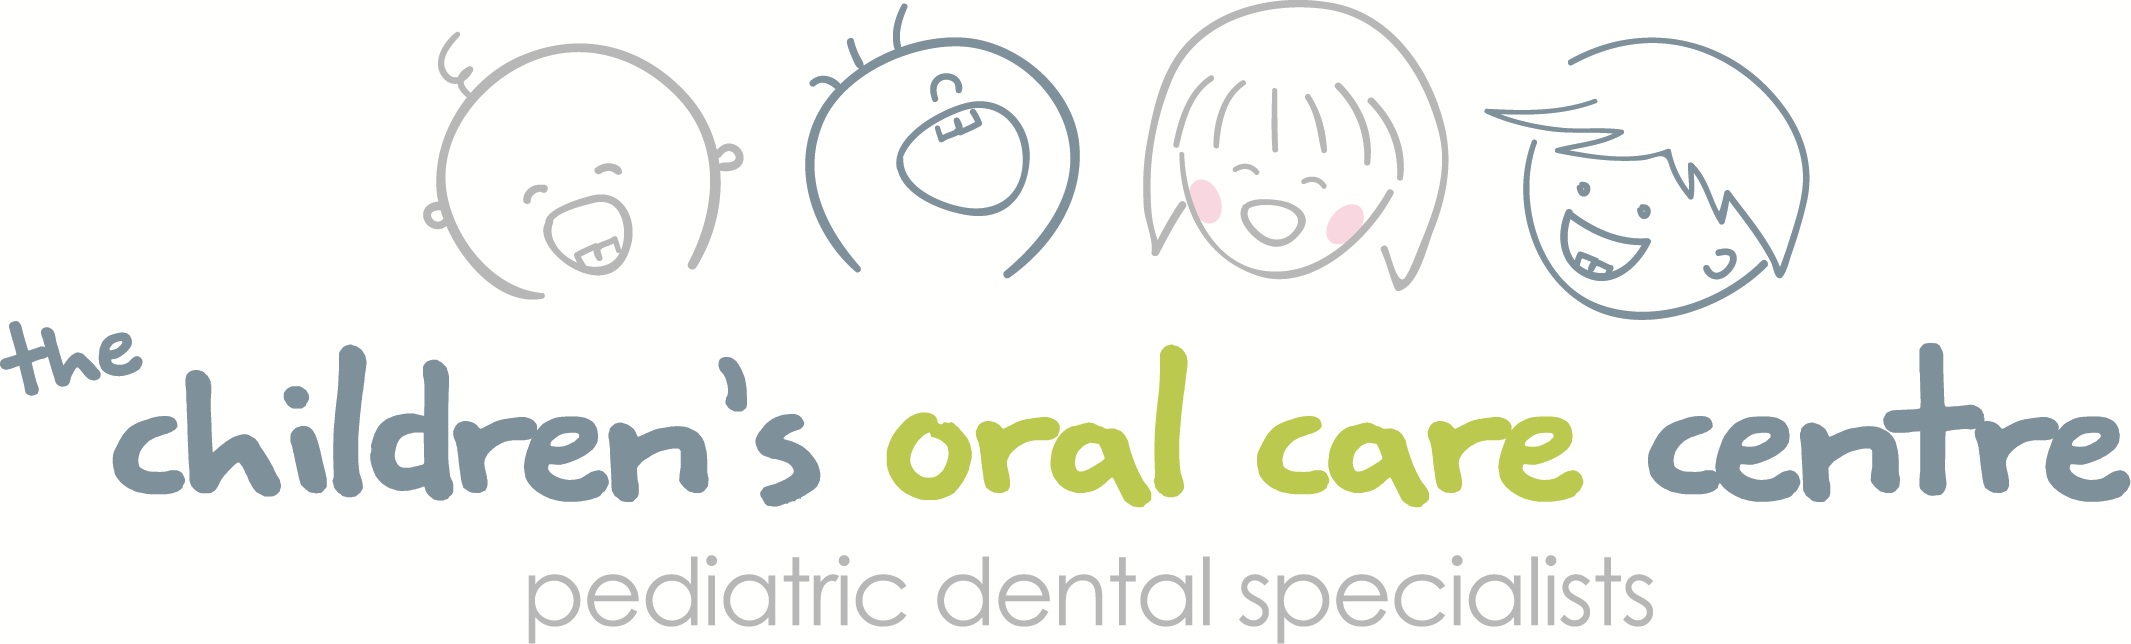 The Children's Oral Care Centre logo